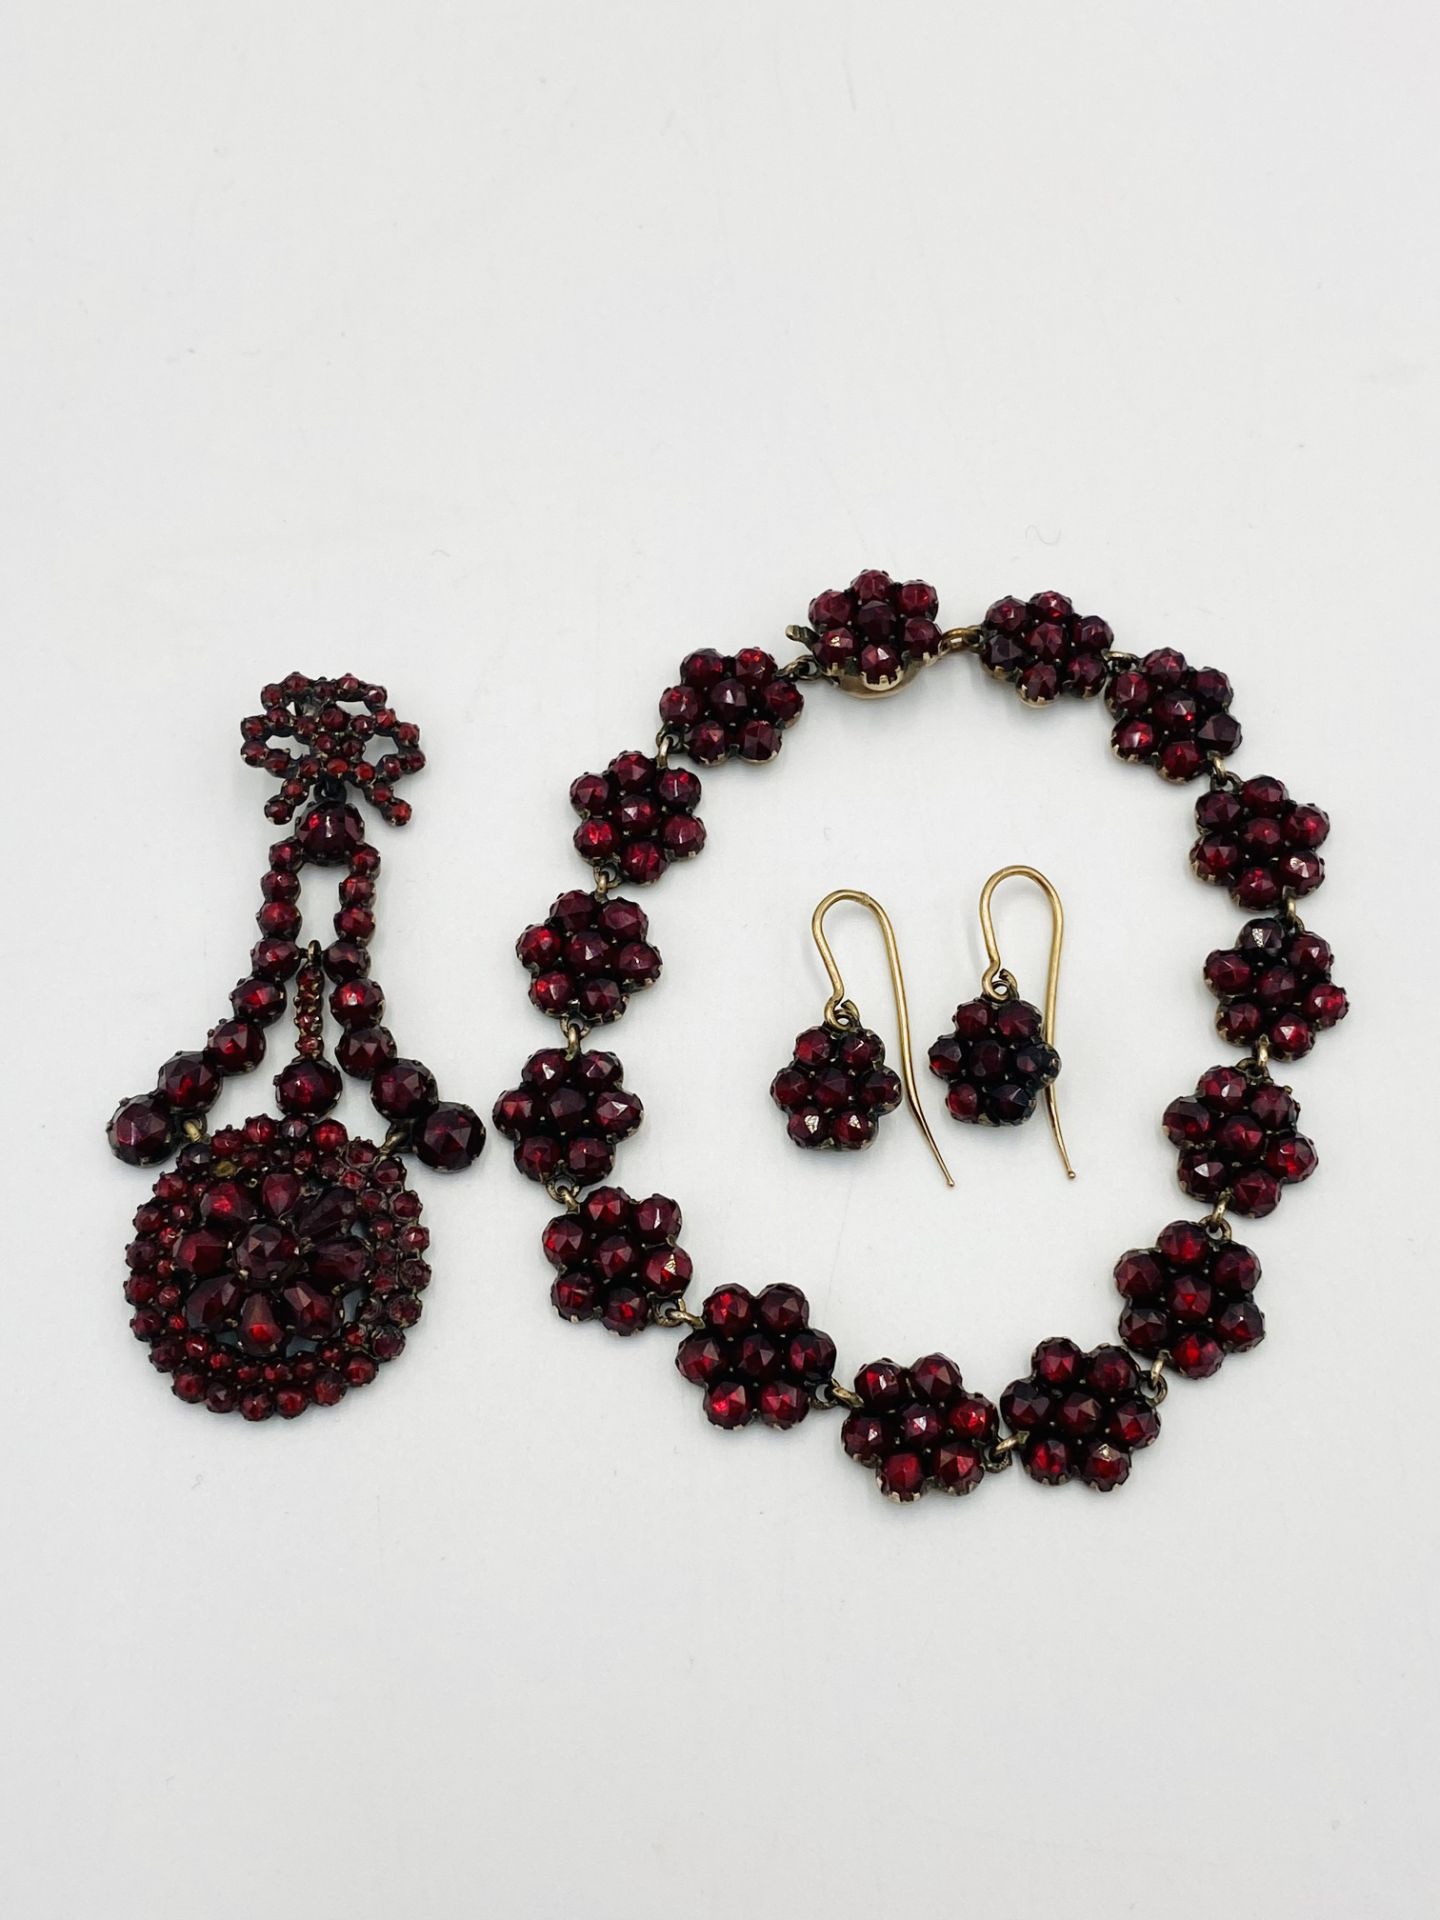 Garnet pendant, bracelet and earring set. - Image 2 of 3